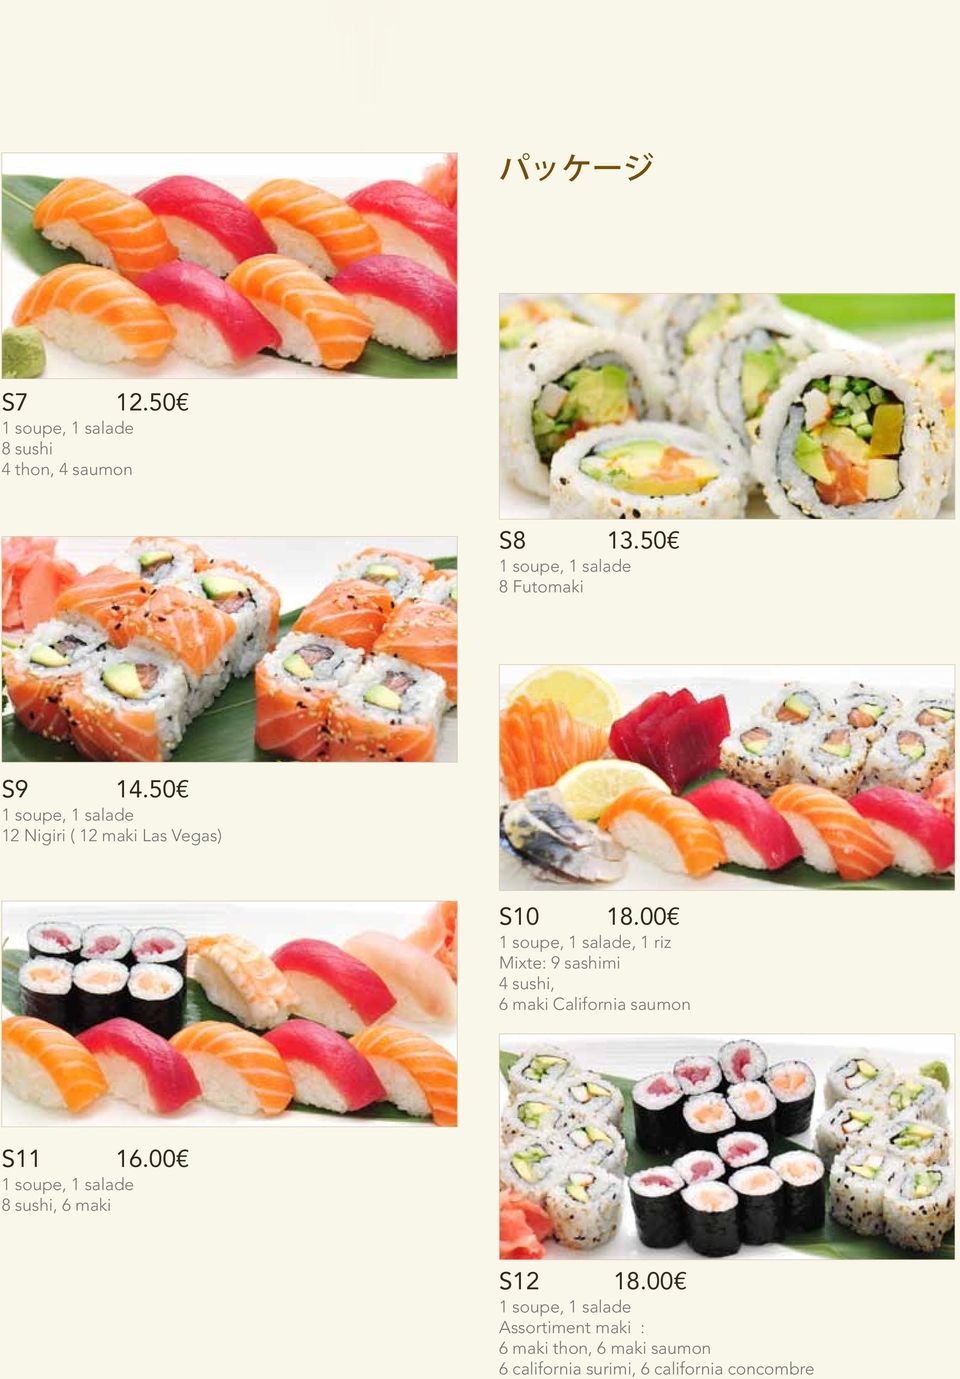 00 Mixte: 9 sashimi 4 sushi, 6 maki California saumon S11 16.